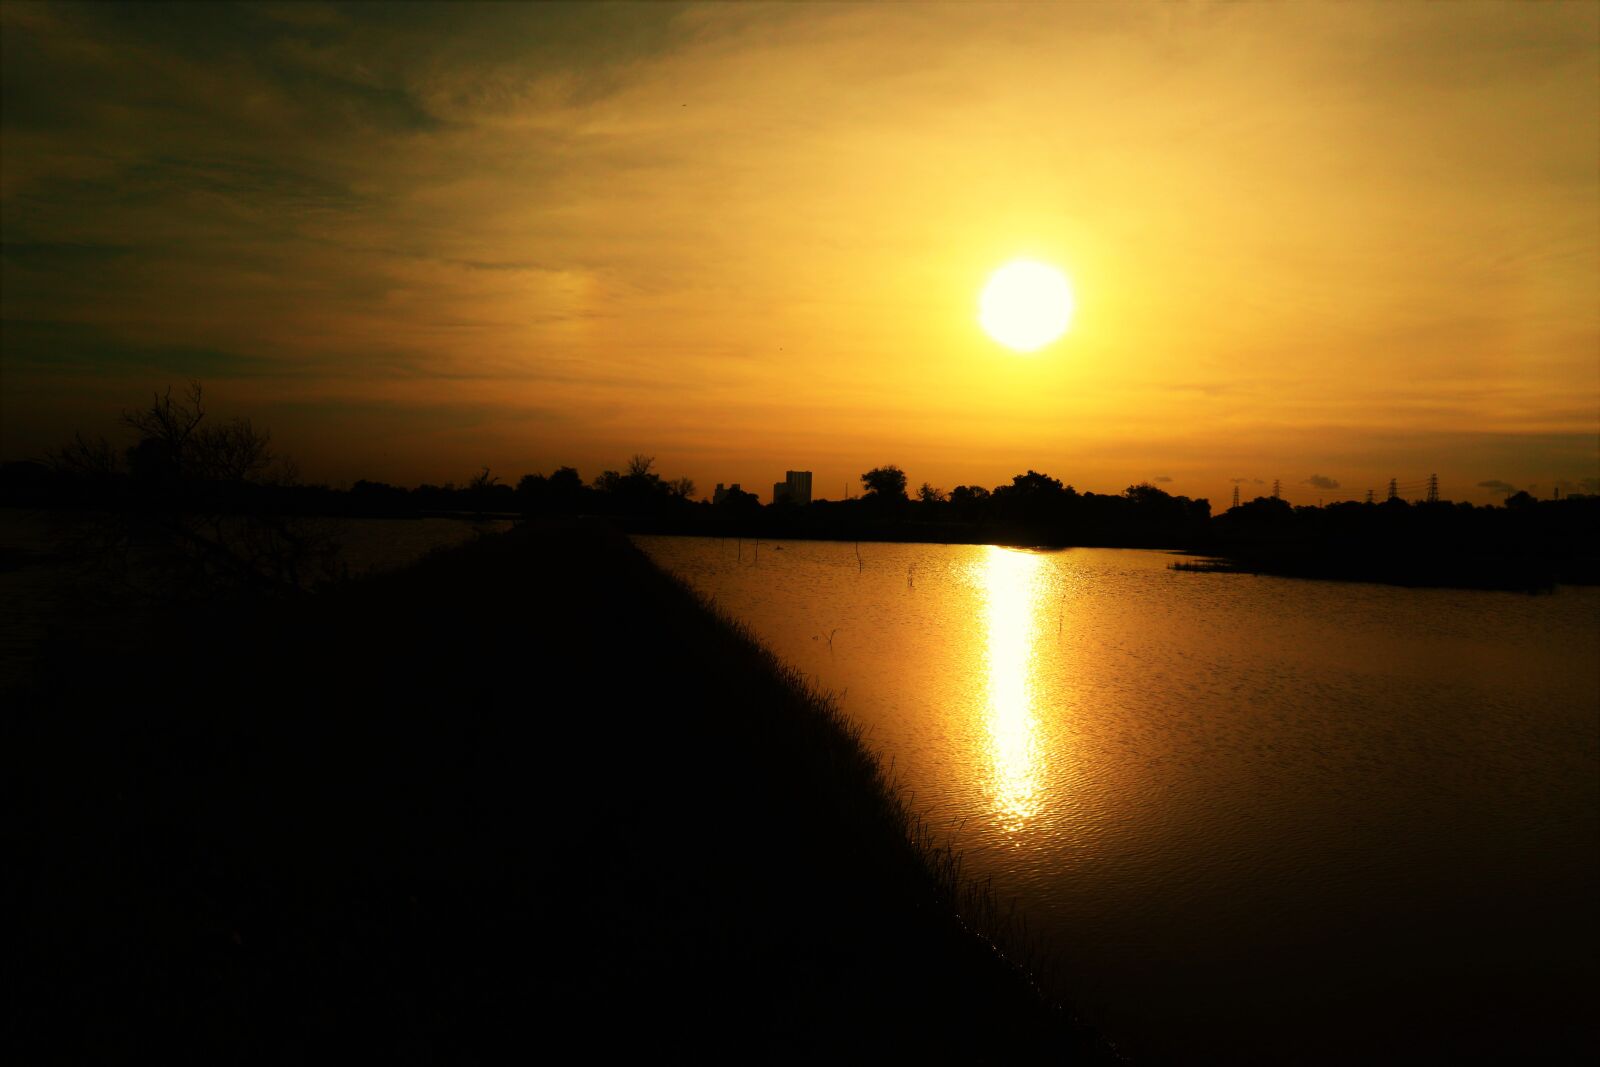 Canon EOS M10 sample photo. Sunset, lake, sunrise photography